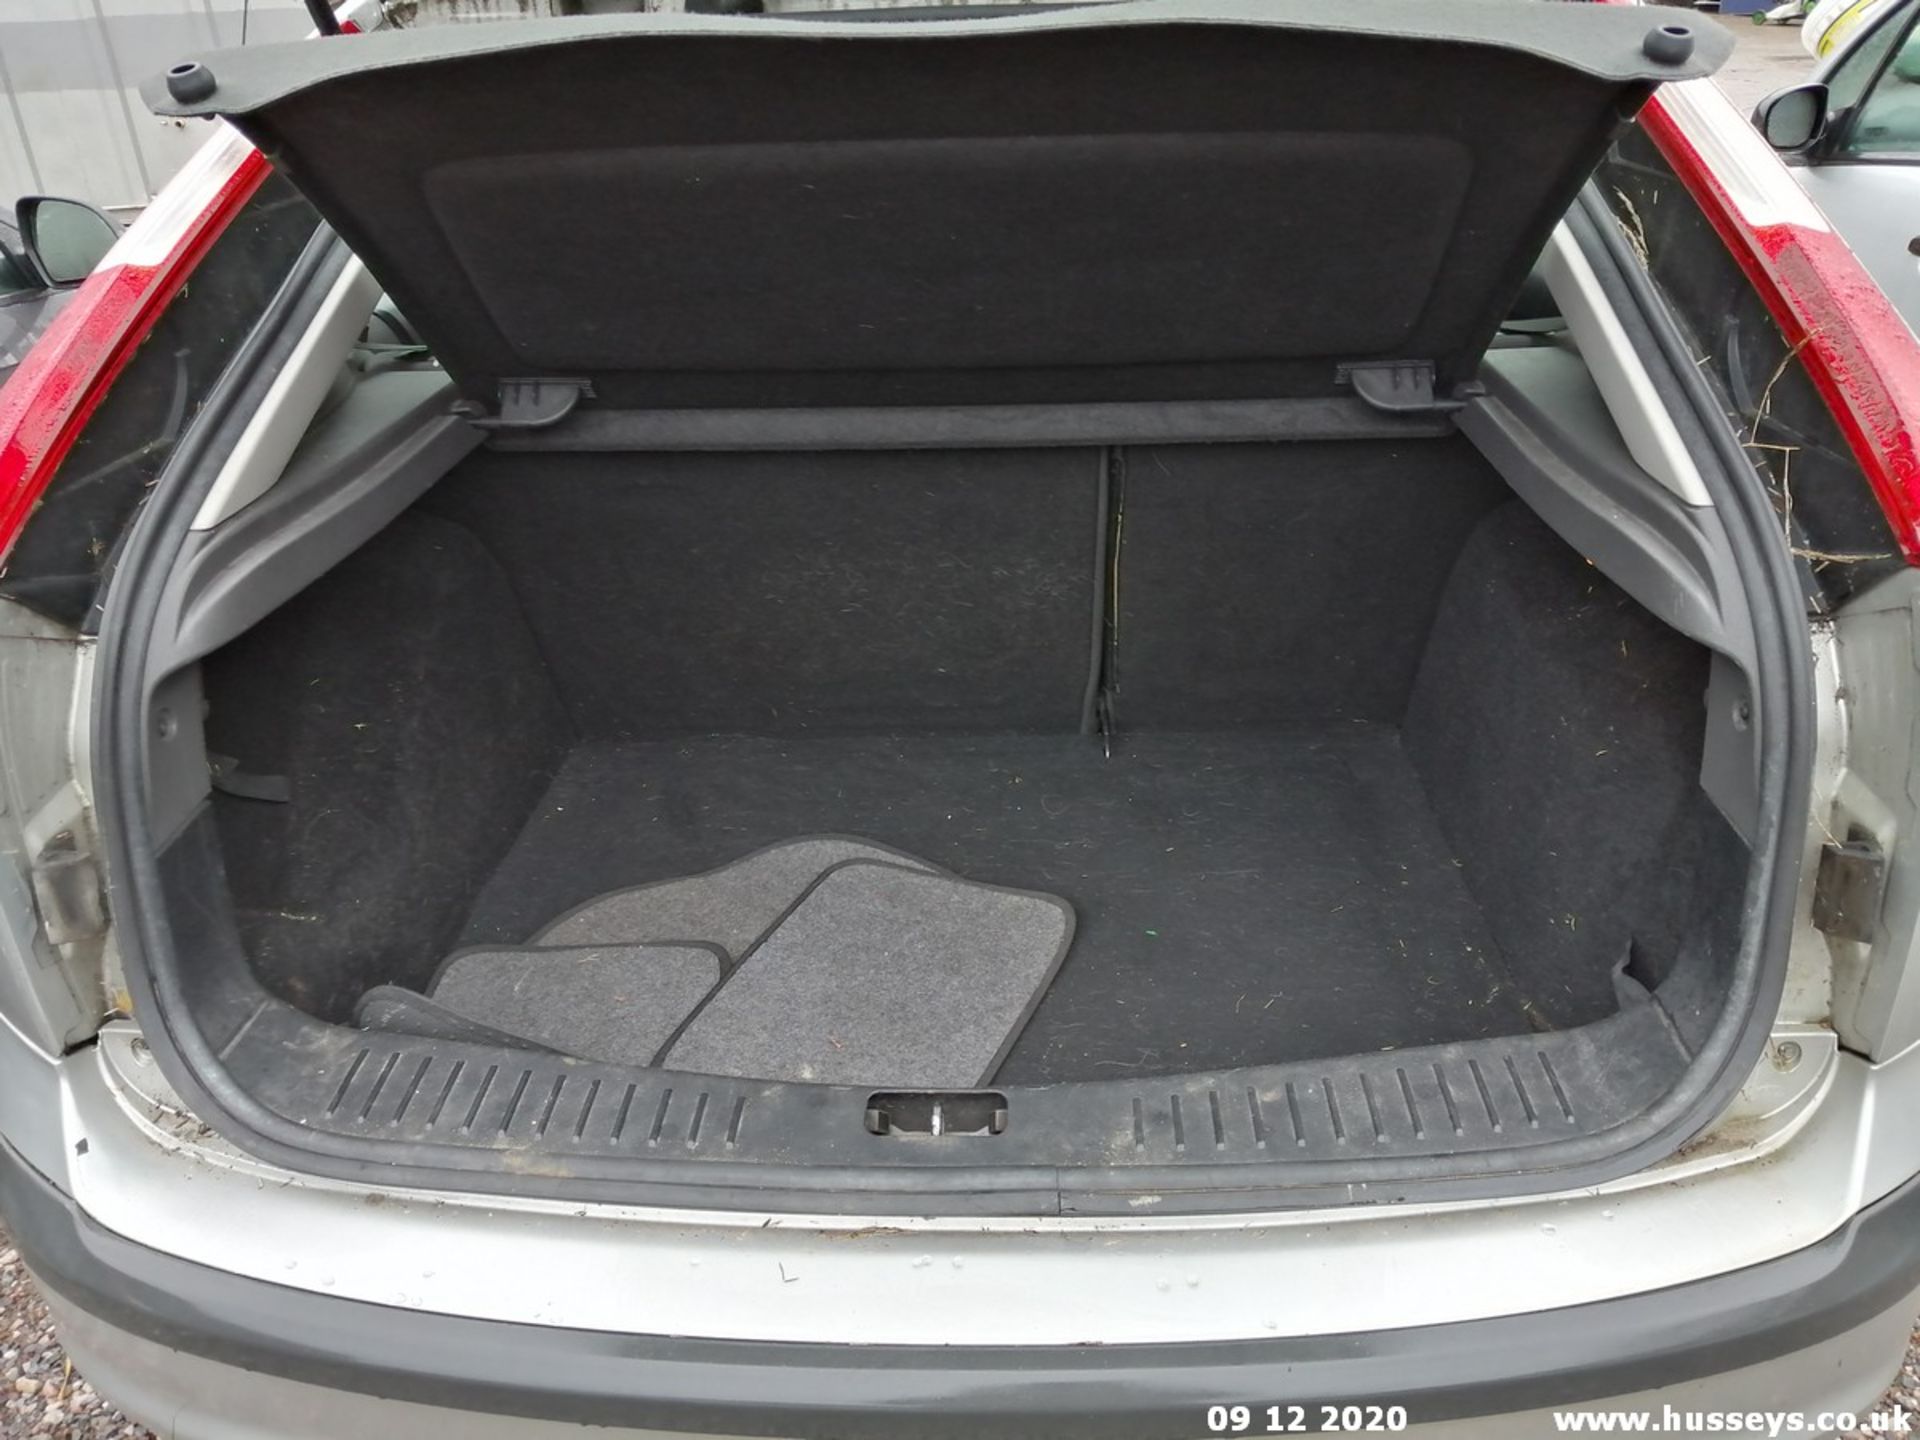 07/56 FORD FOCUS ZETEC CLIMATE - 1596cc 5dr Hatchback (Silver, 104k) - Image 10 of 10